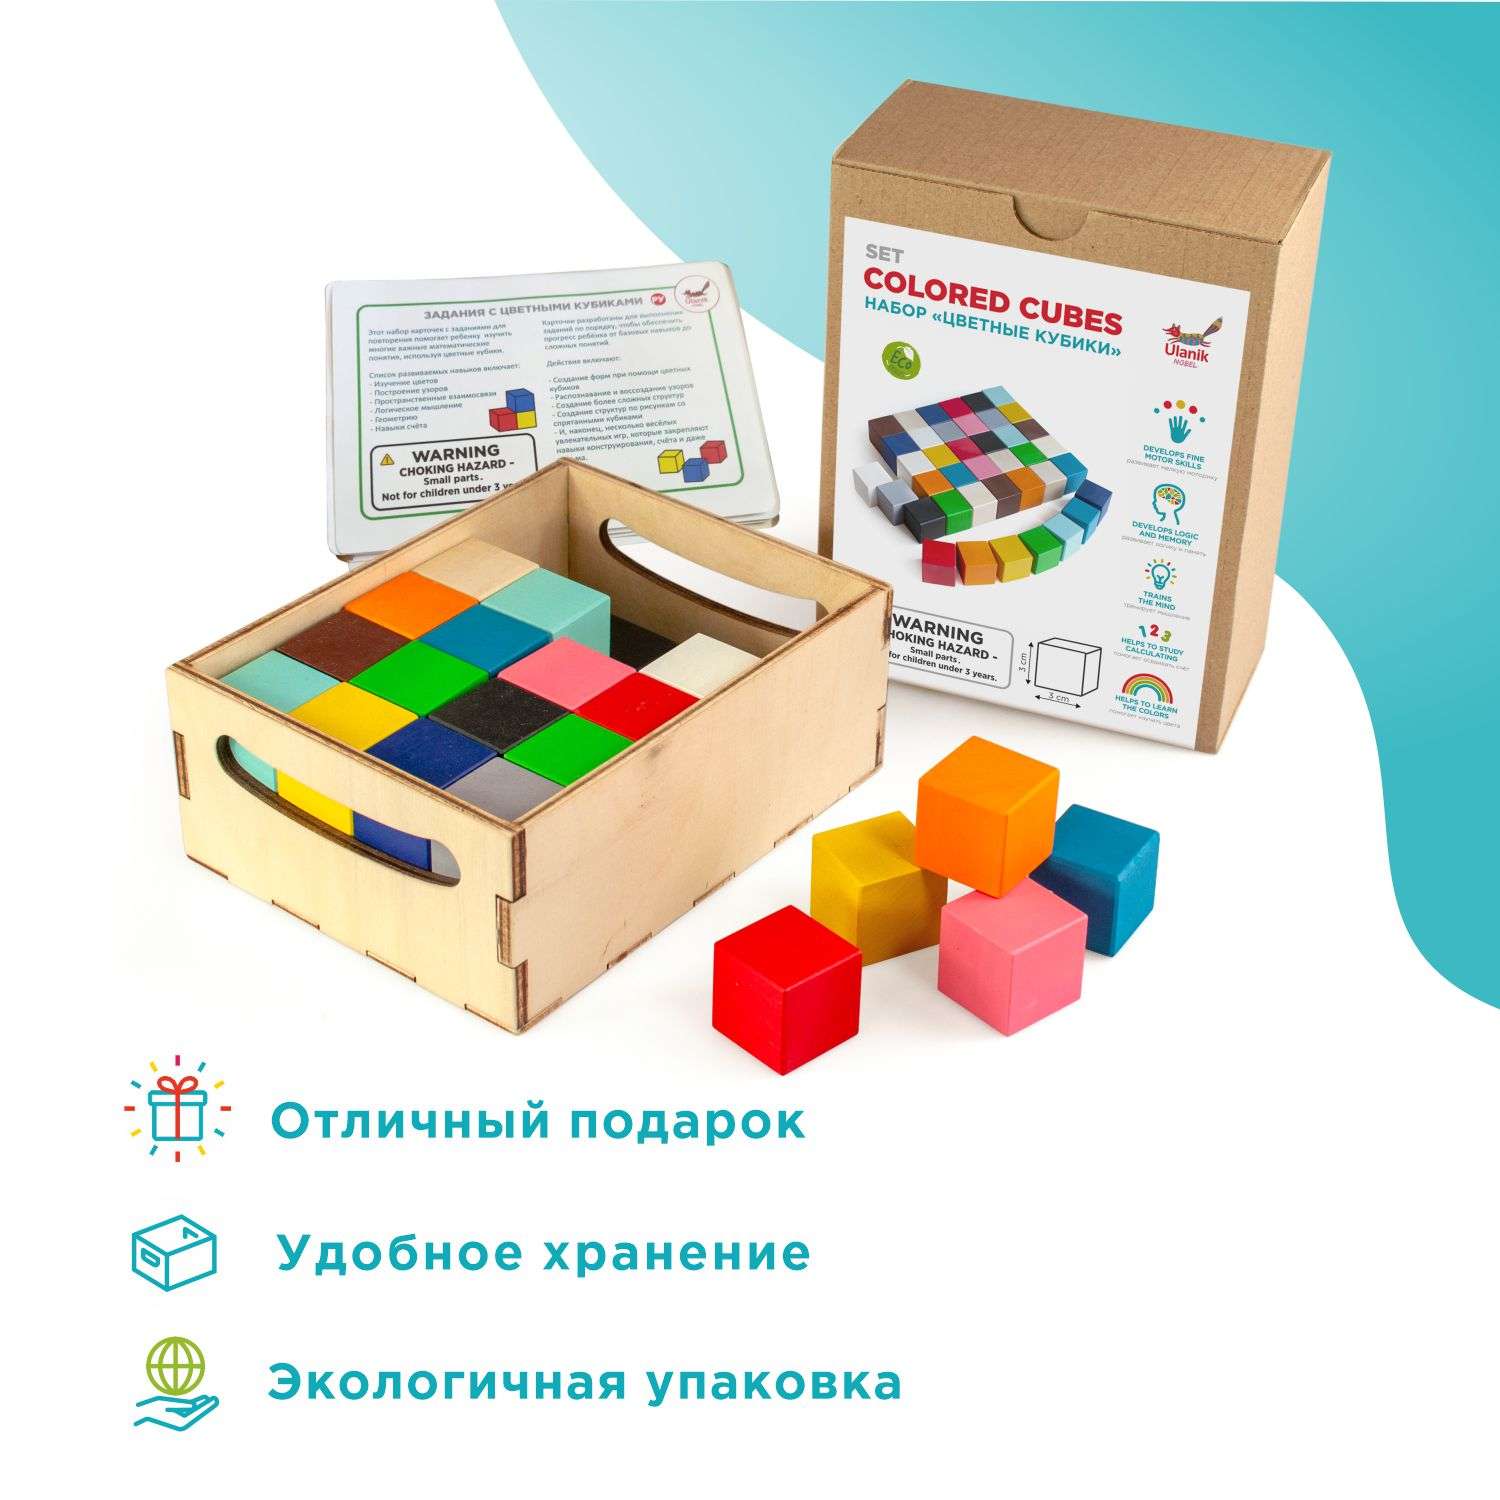 Набор кубиков Ulanik цветных и карточки с заданиями - фото 2